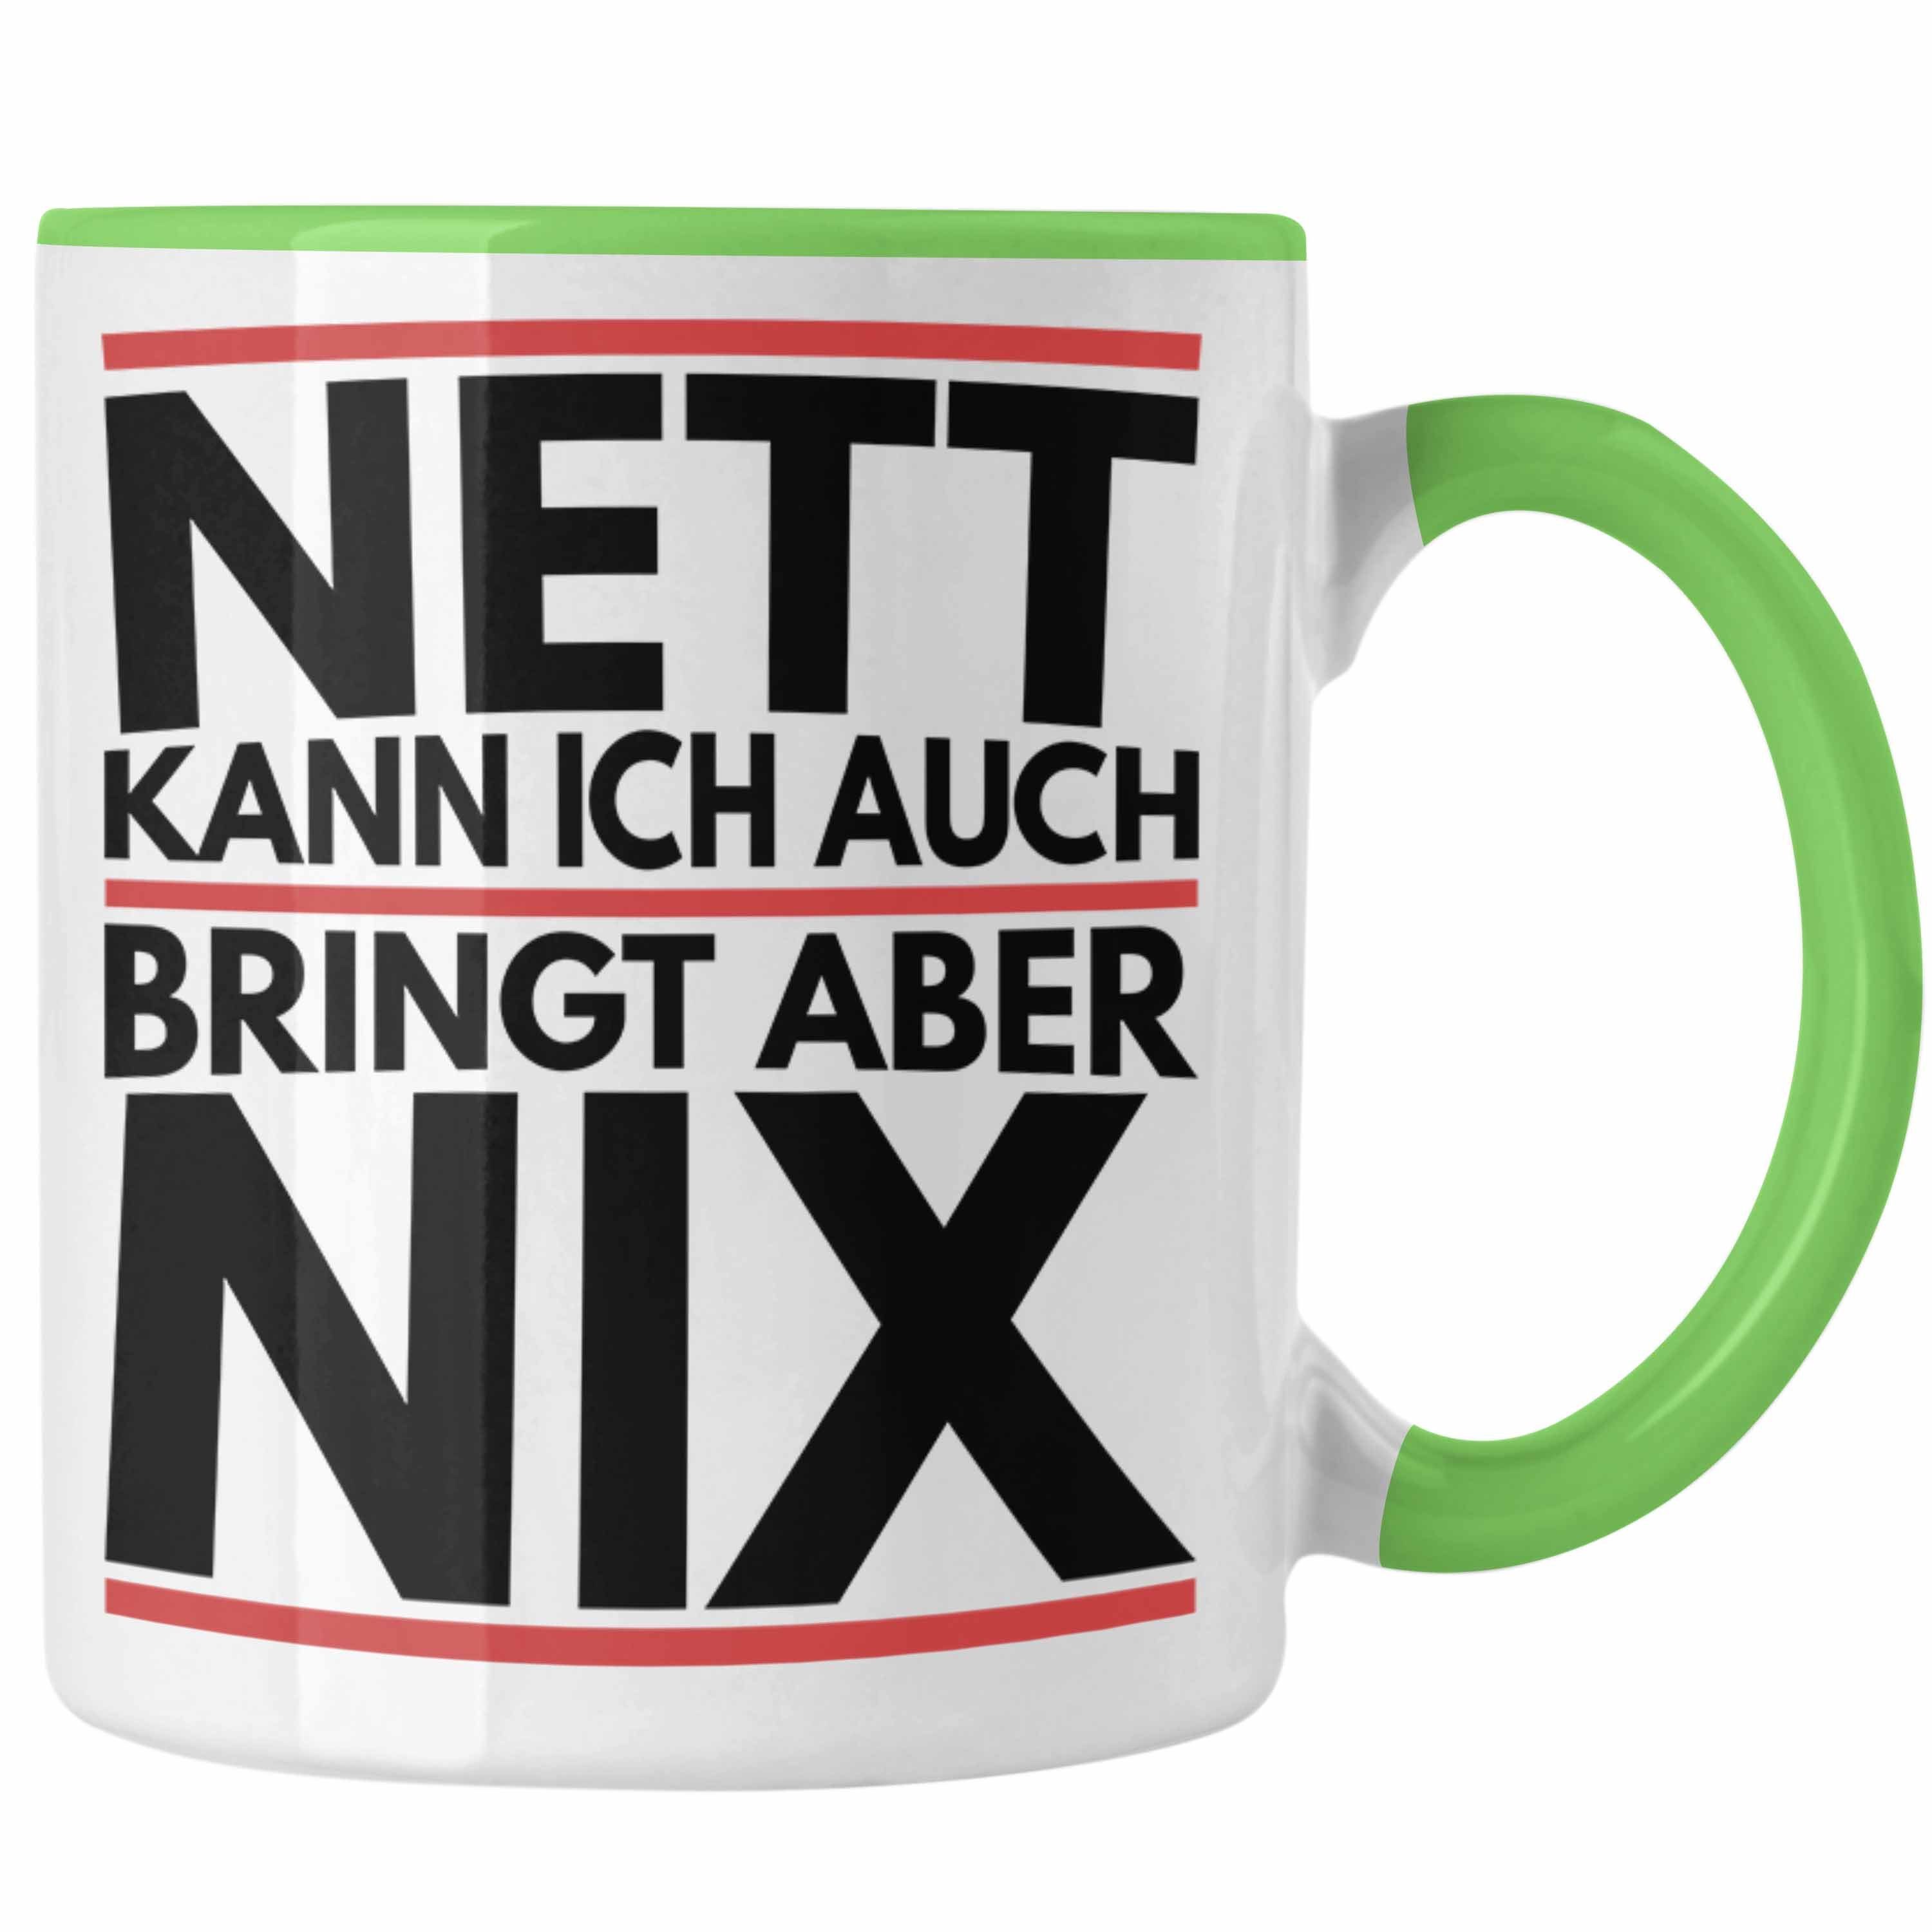 Chef Aber Ich Trendation Kann Kollege Tasse Grün Tasse Bringt Nix - Auch Trendation Nett Humor Joke Geschenk